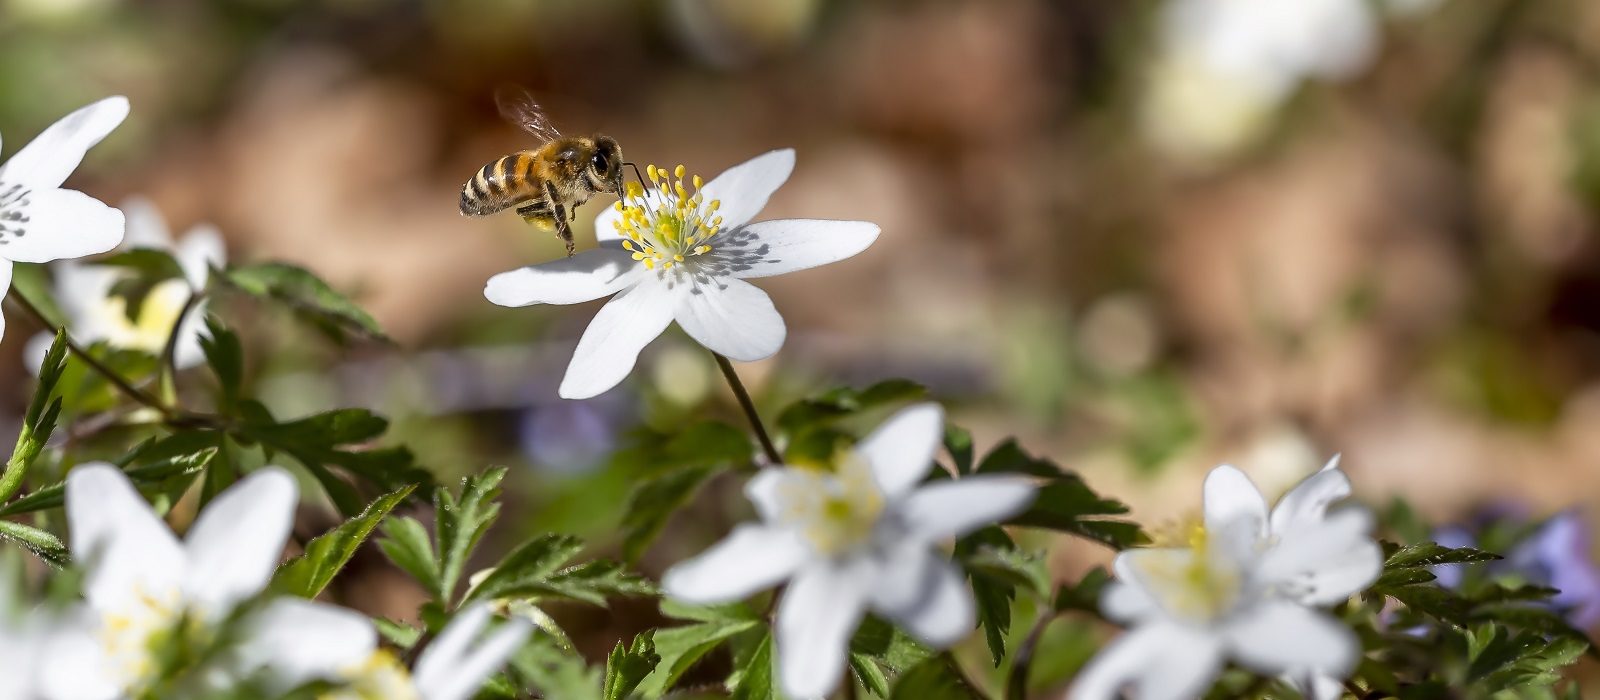 Planter som er bra for bier og miljøet